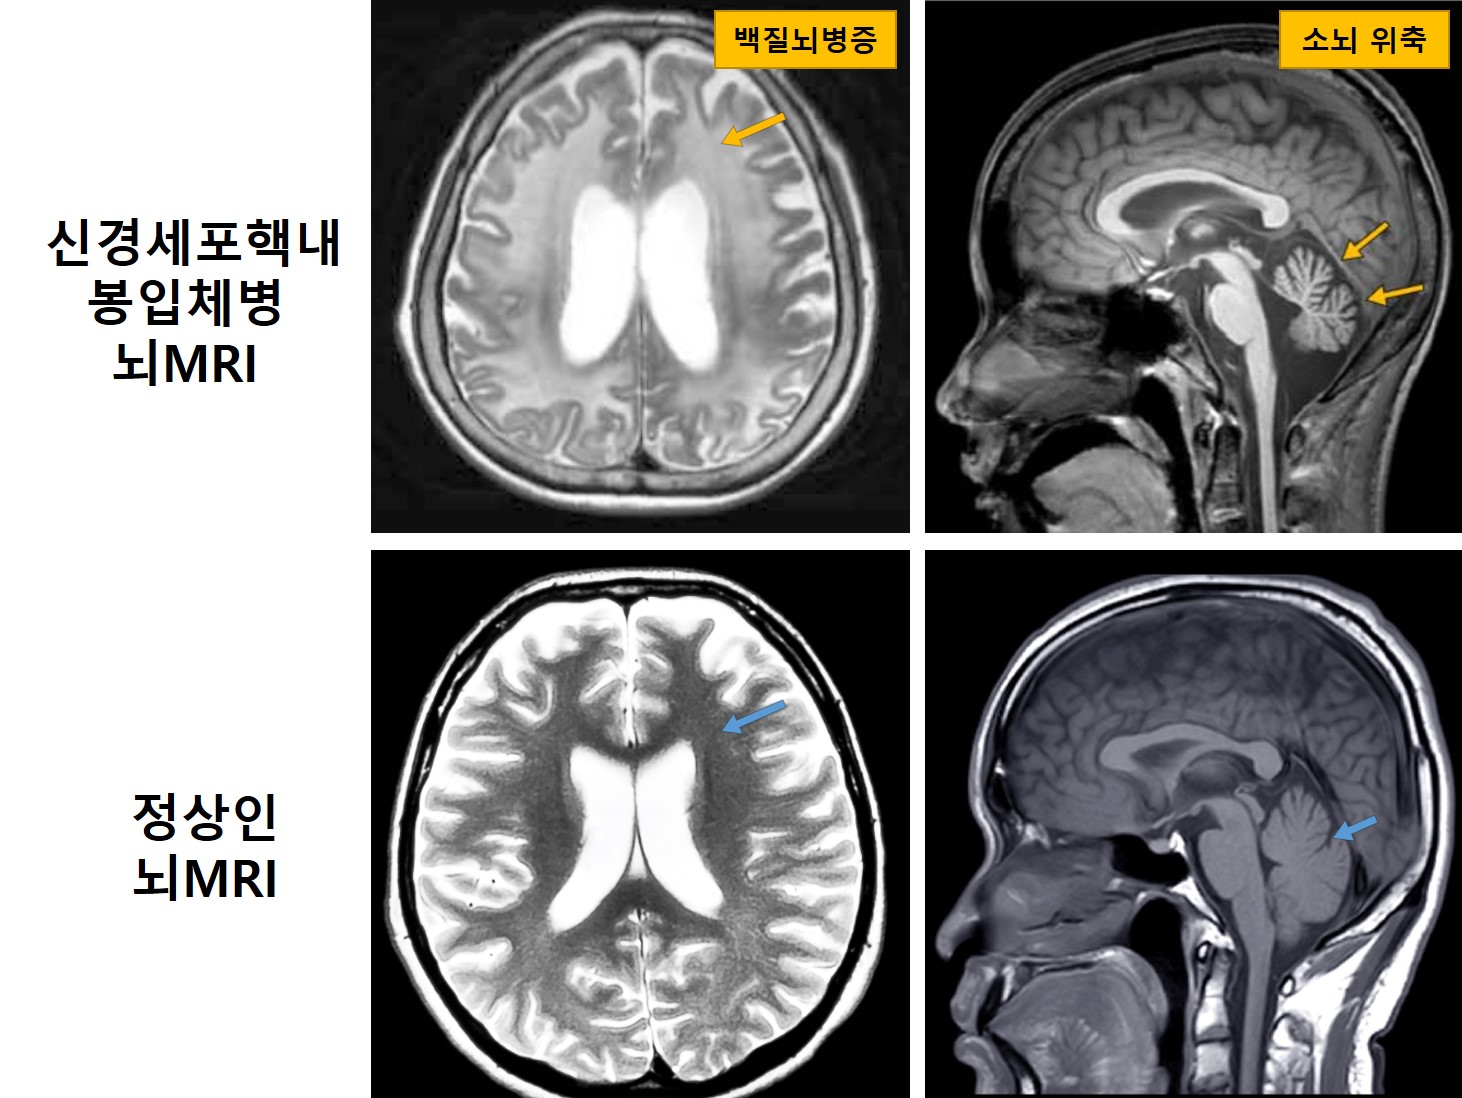 신경세포핵내봉입체병 환자(위)와 정상인(아래)의 뇌MRI 비교